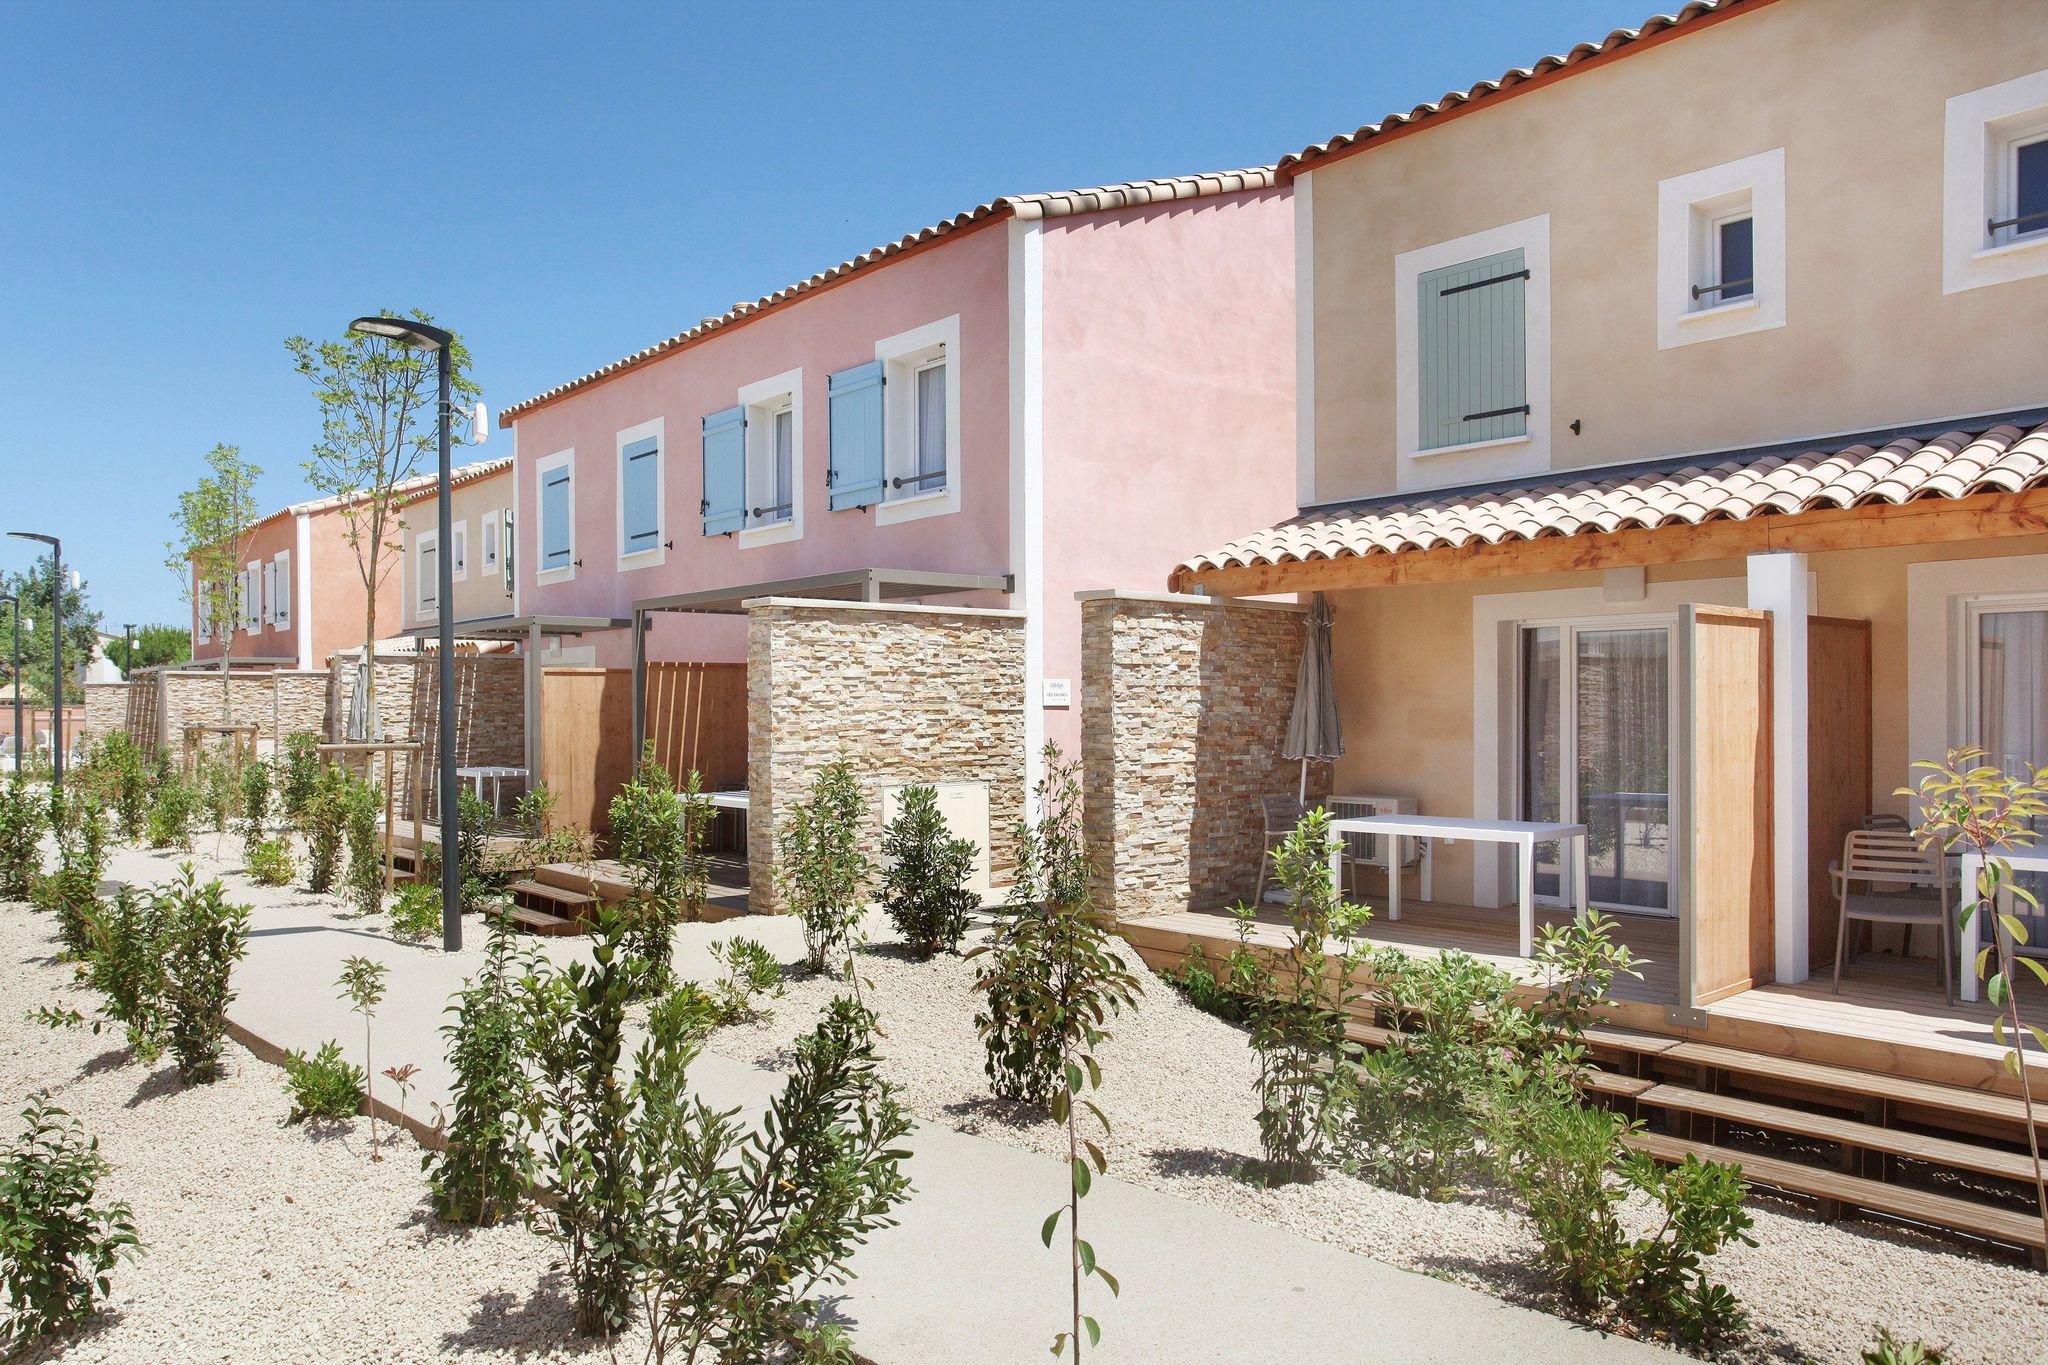 Schön gepflegte Wohnung in der Nähe der historischen Aigues-Mortes